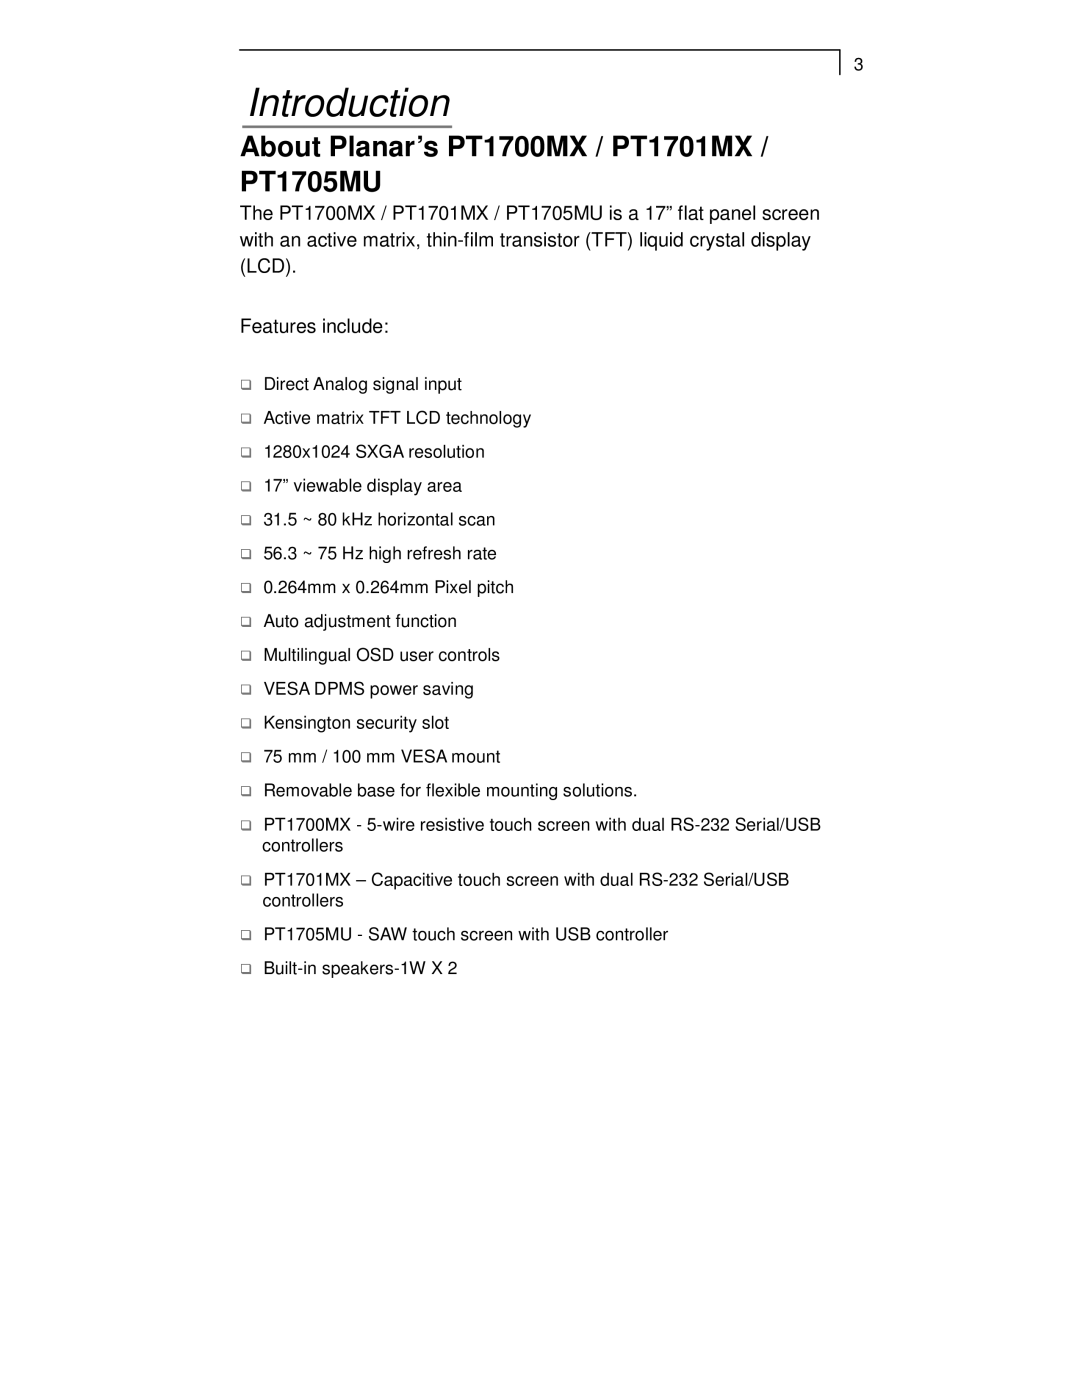 Planar manual Introduction, About Planar’s PT1700MX / PT1701MX / PT1705MU 